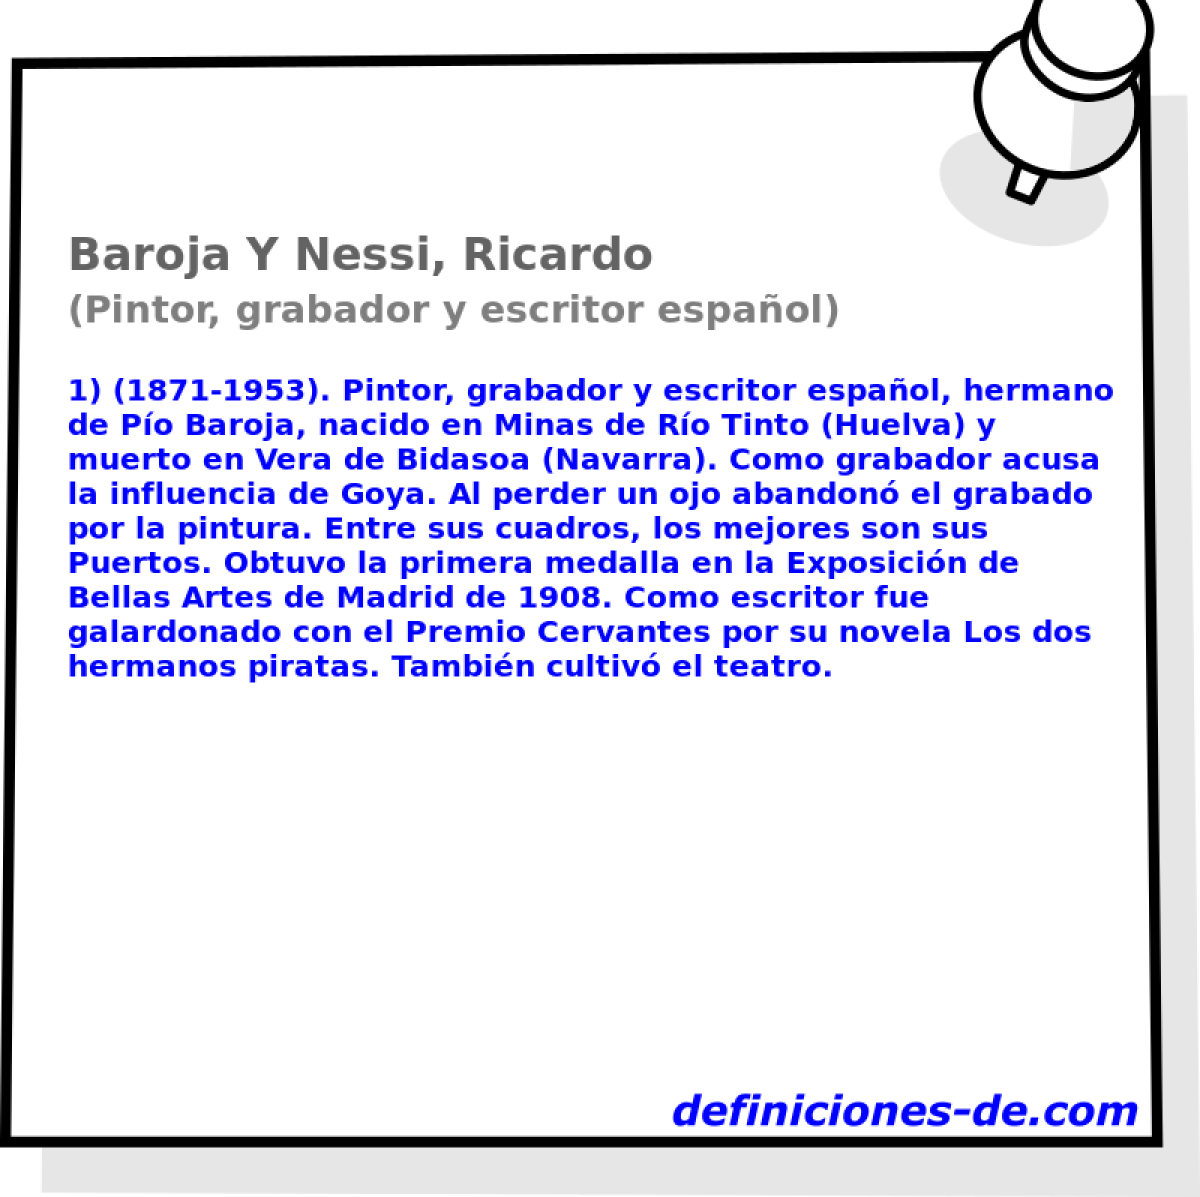 Baroja Y Nessi, Ricardo (Pintor, grabador y escritor espaol)